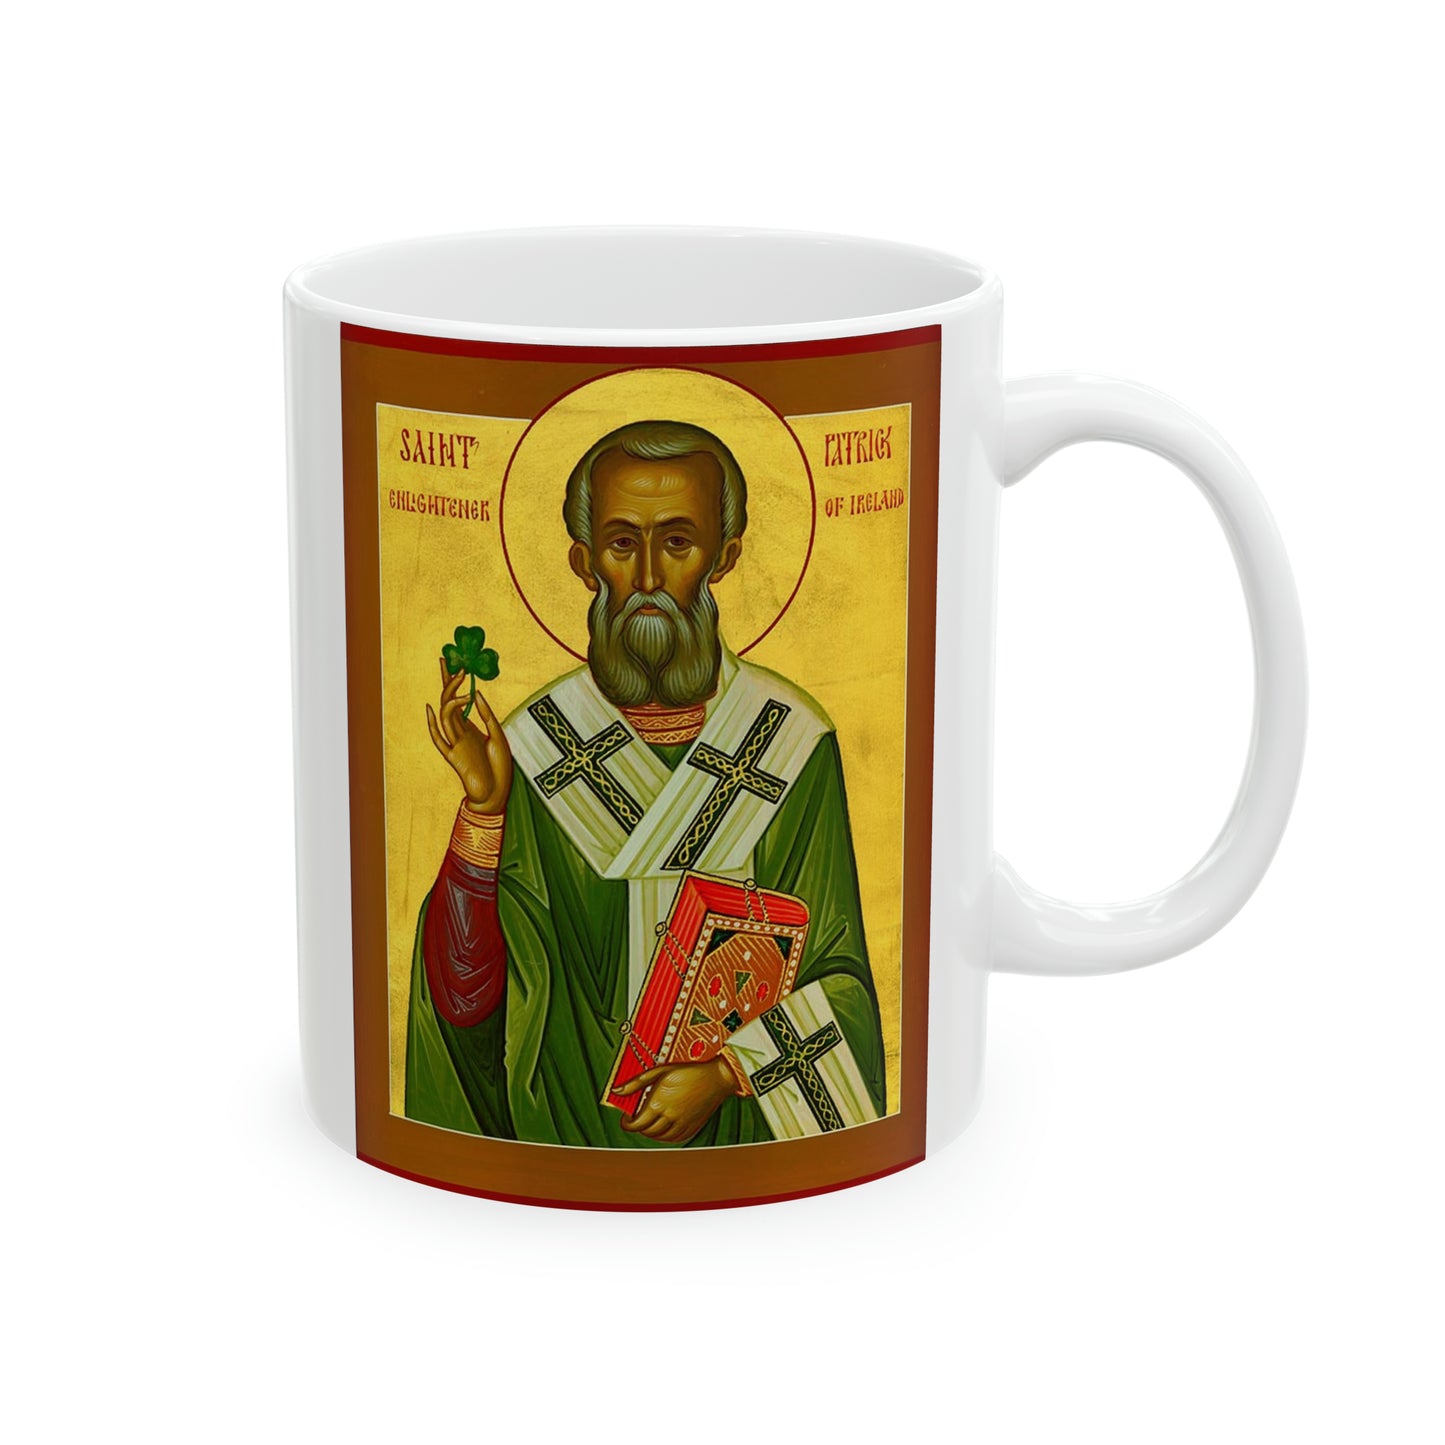 St. Patrick Ceramic Mug, 11oz